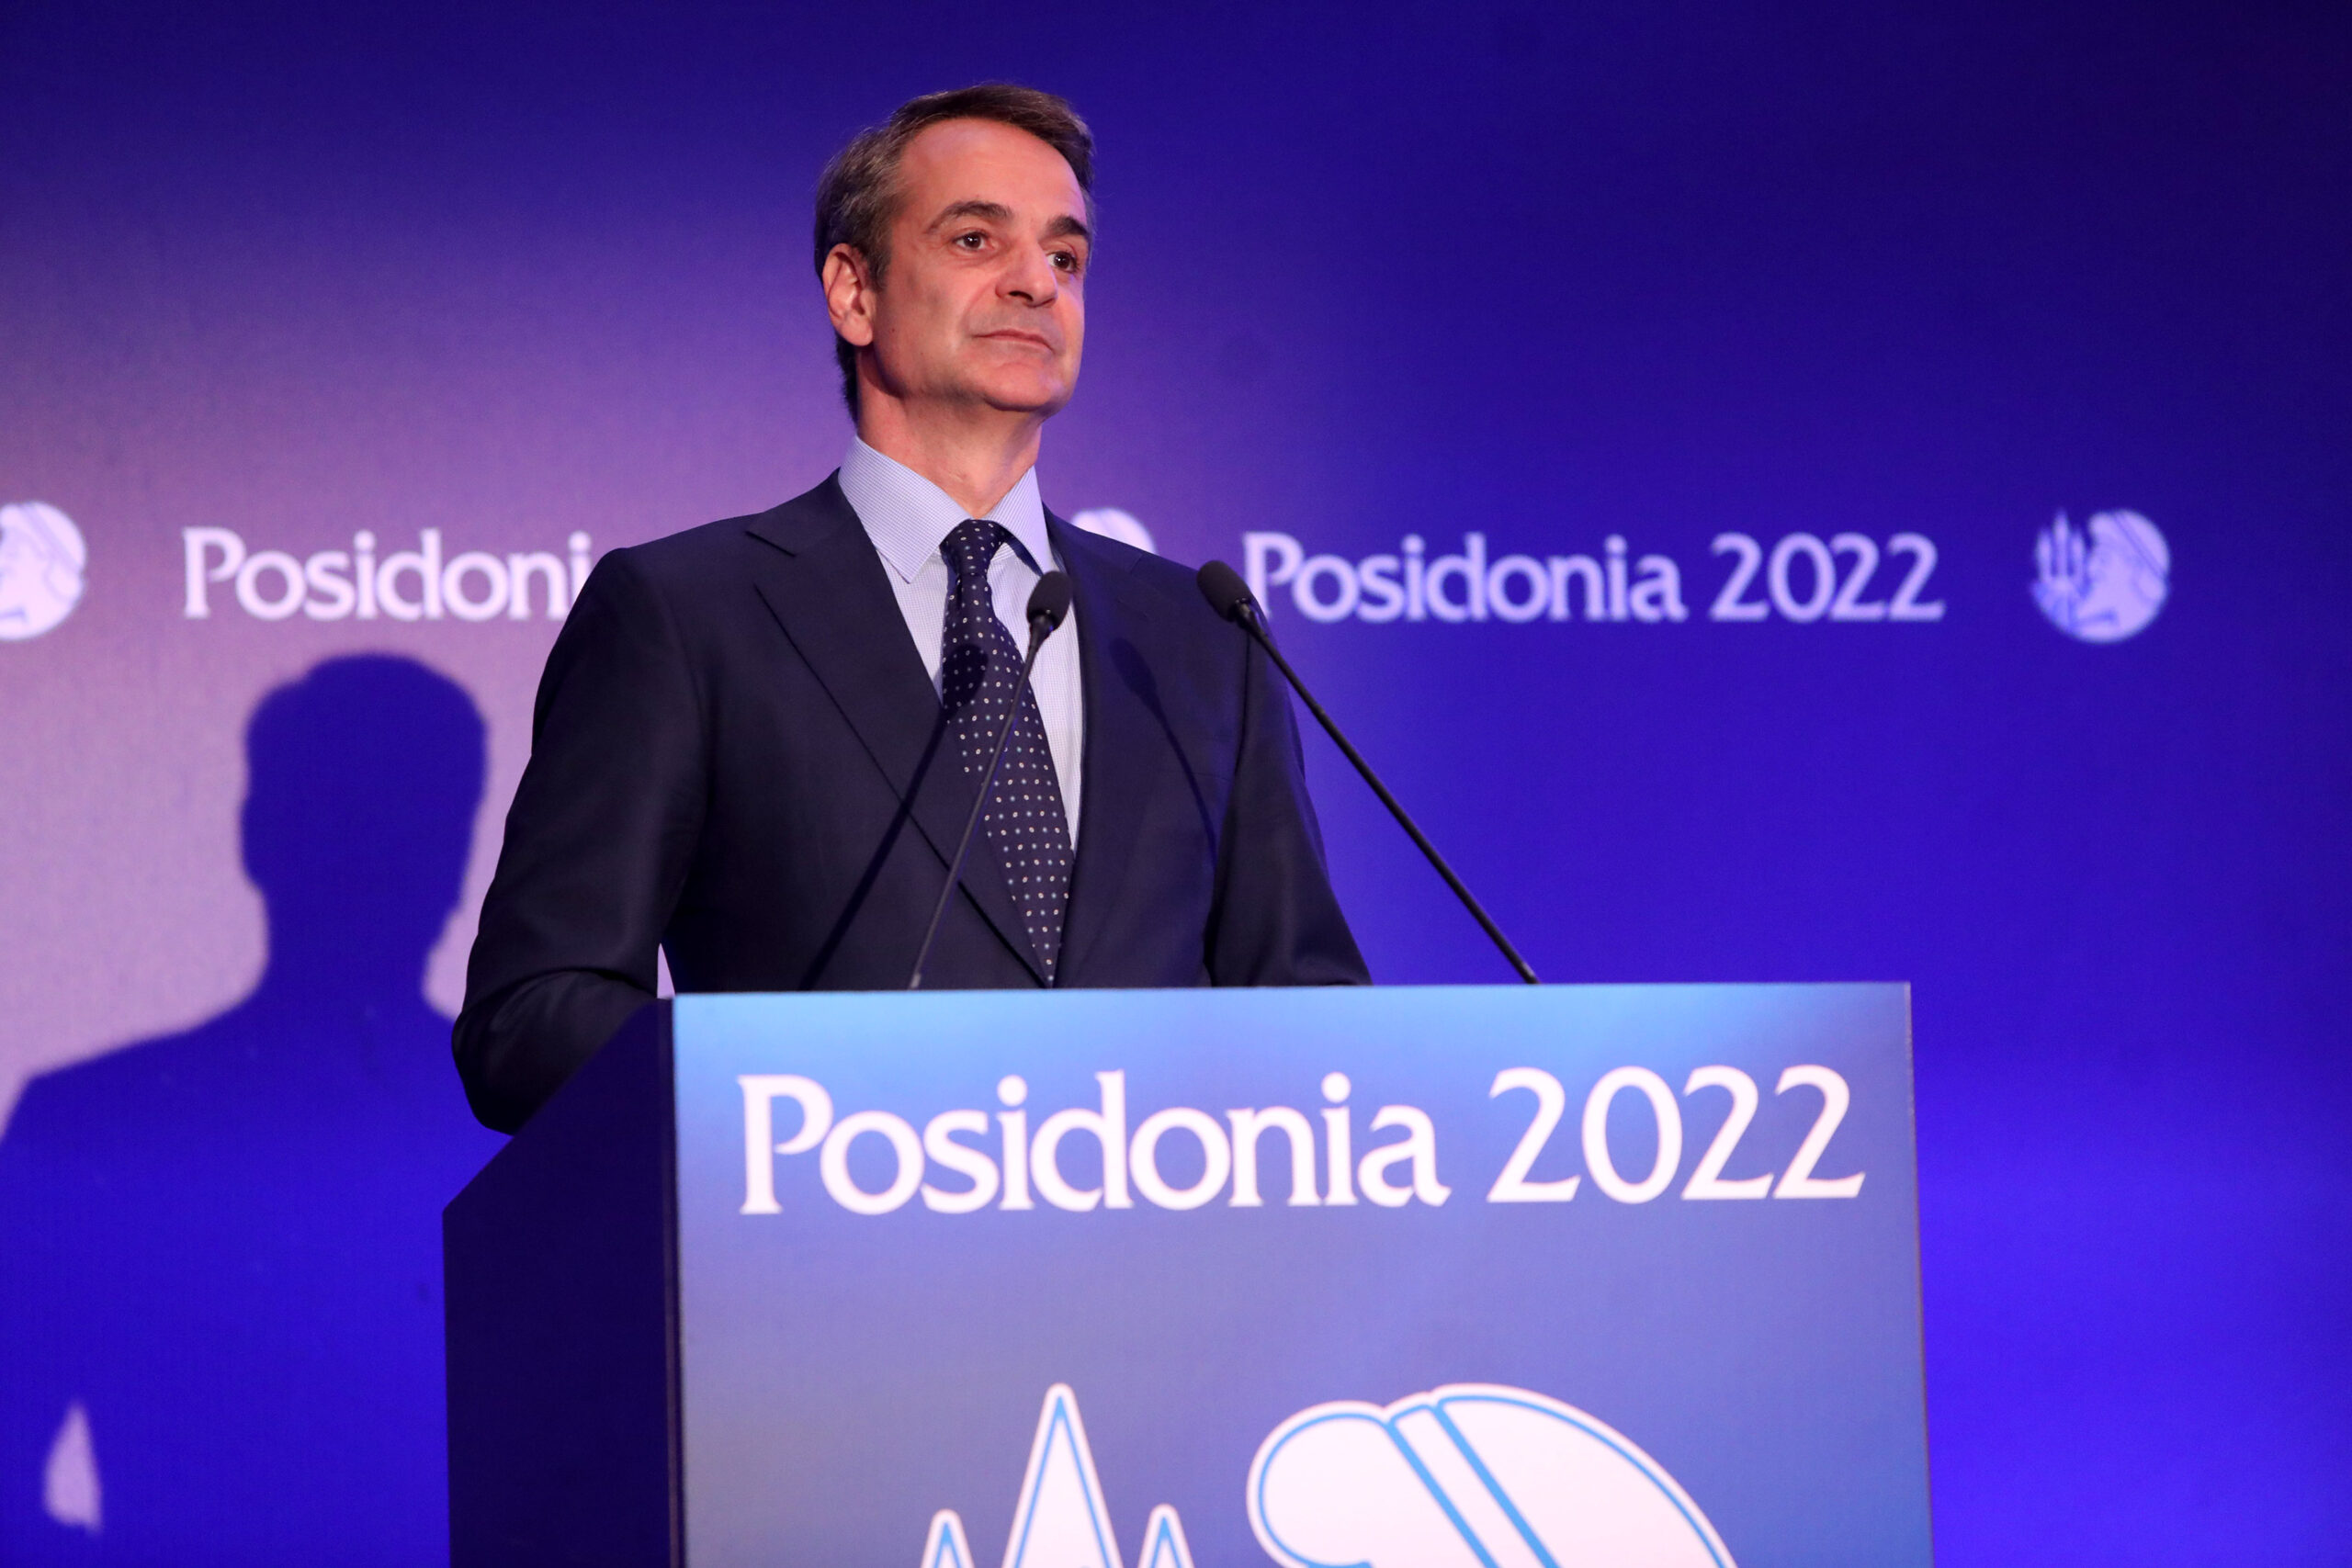 Κυρ. Μητσοτάκης στα Ποσειδώνια 2022: Η πατρίδα μας γίνεται ενεργειακή πύλη προς ολόκληρη την Ευρώπη και κρίσιμος κόμβος για όλη την ΝΑ Μεσόγειο